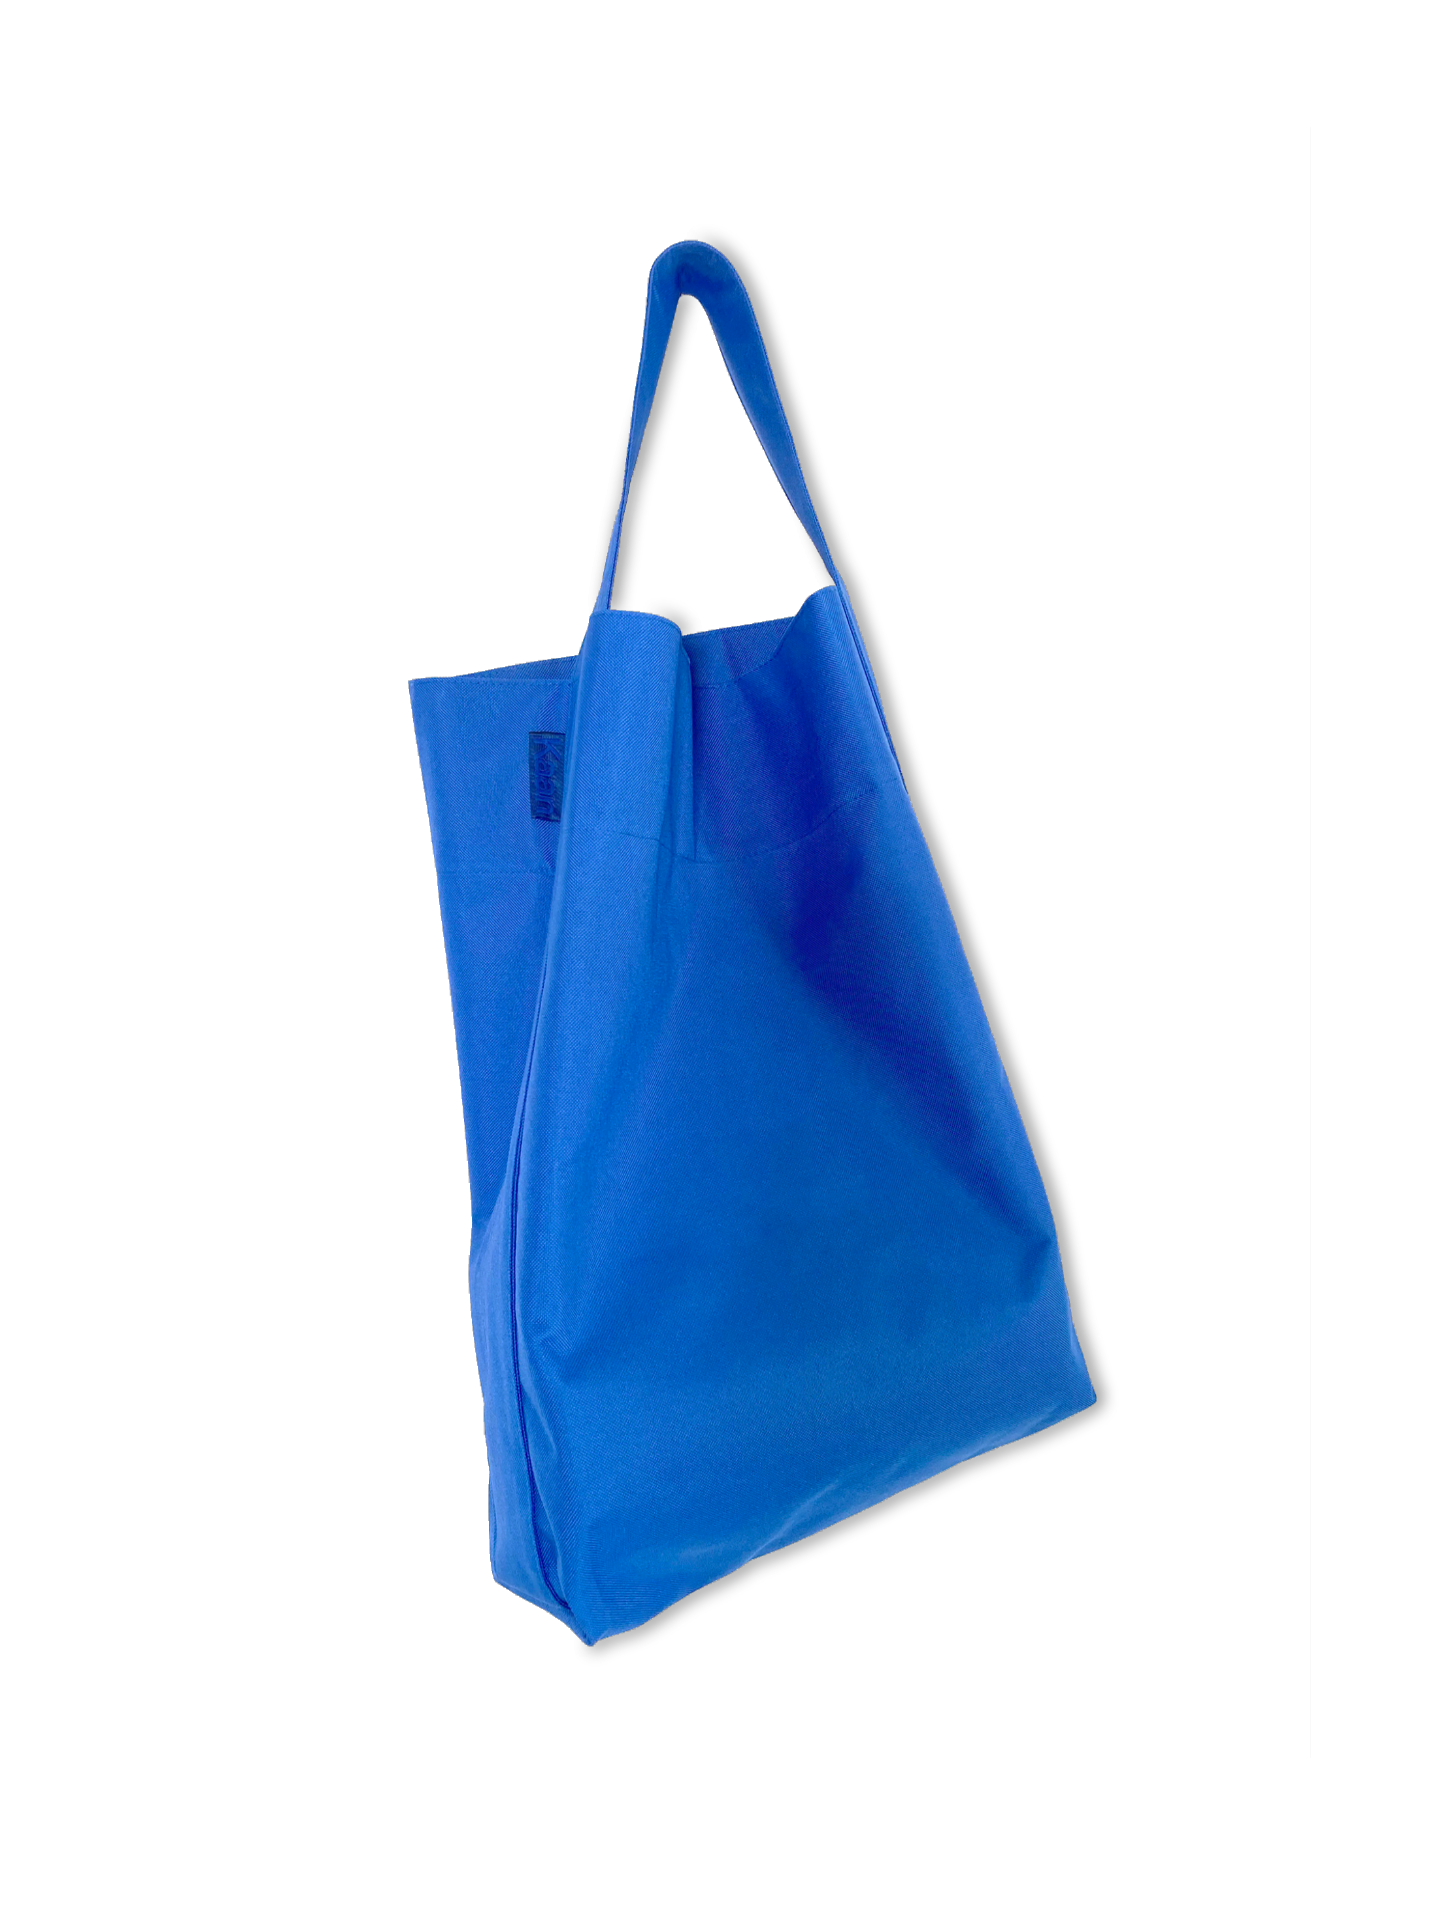 Simply Southern Large Waterproof Tote Bag in Cobalt Blue